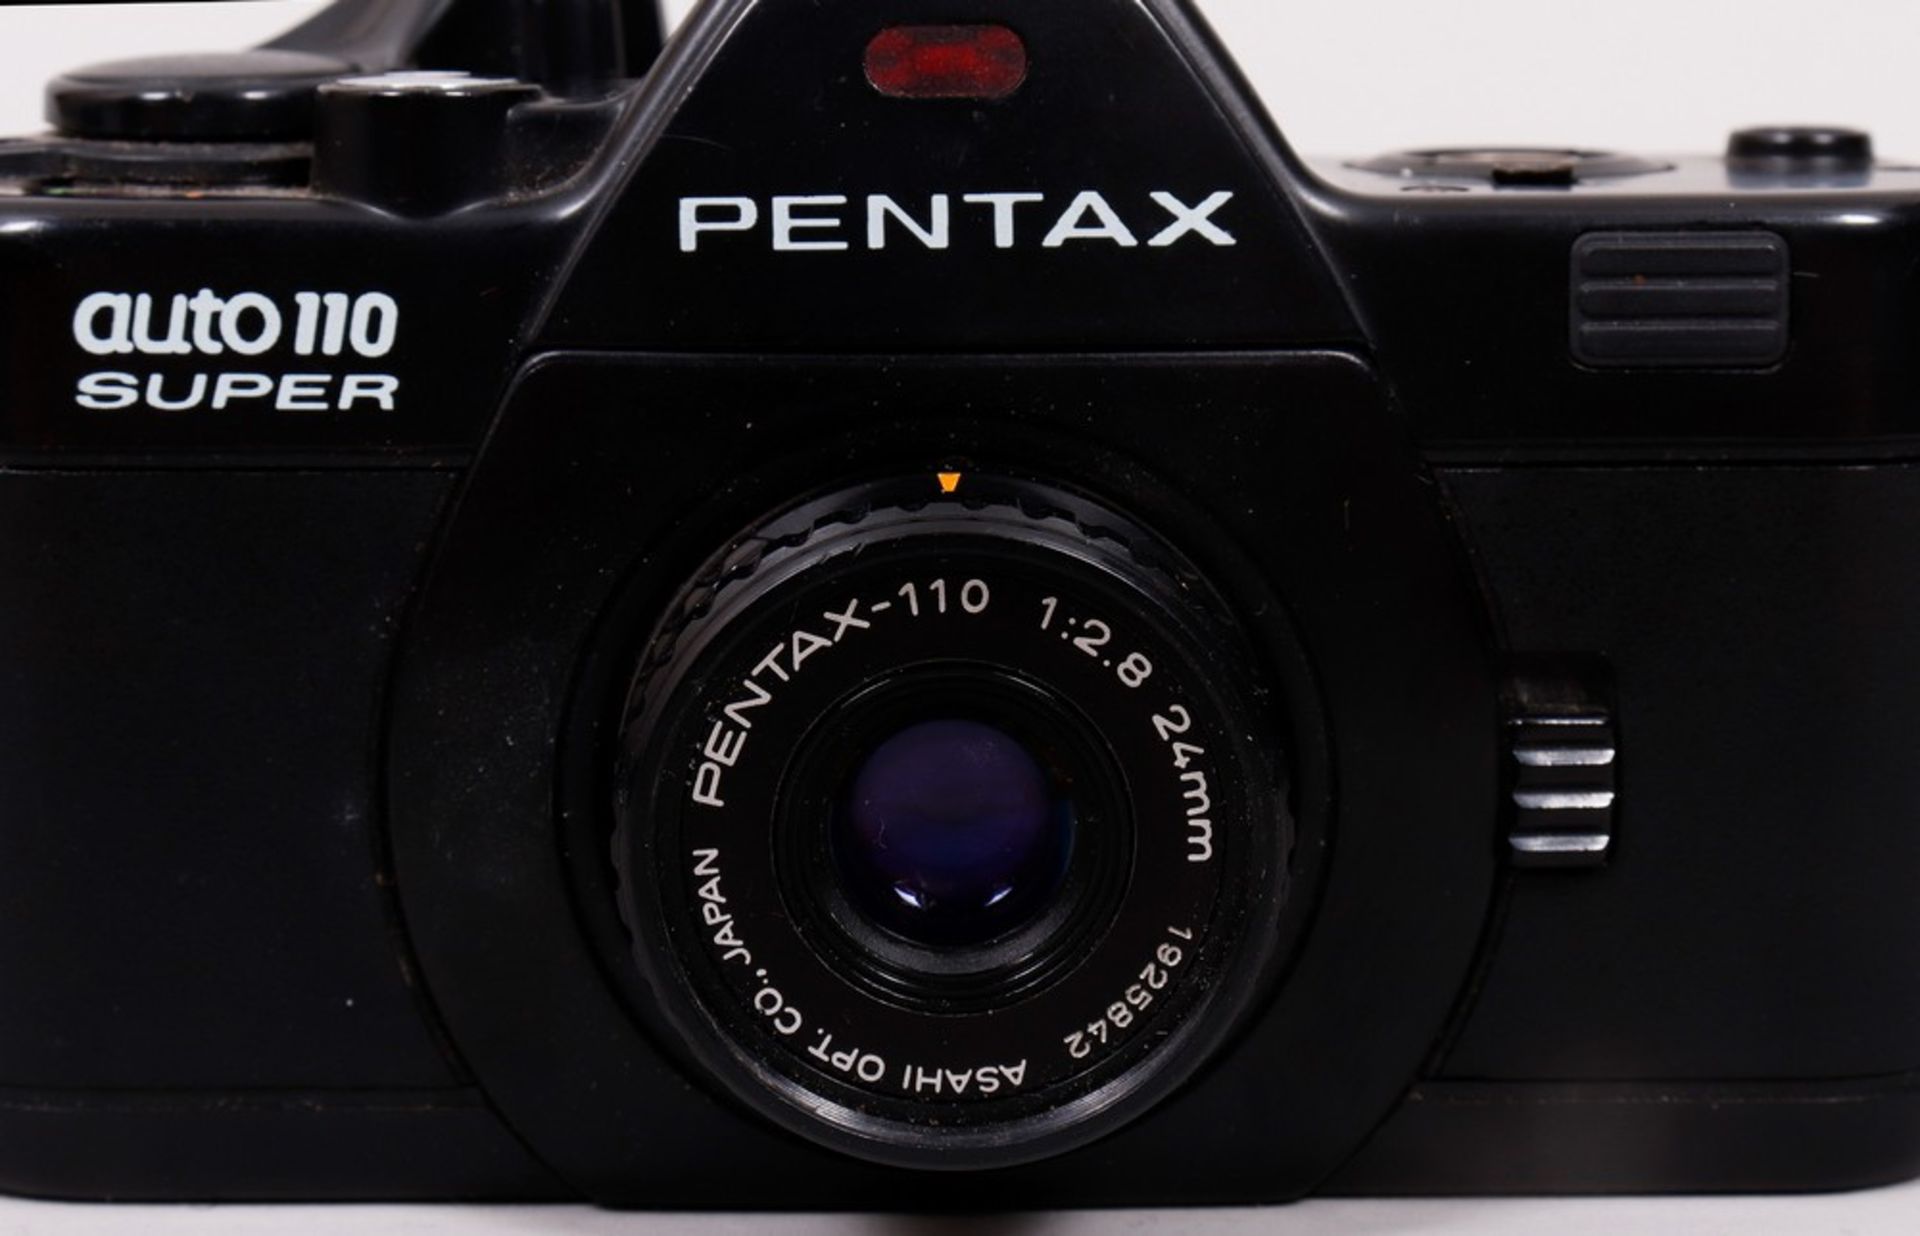 SLR-Kleinstbildkamera, Pentax, Japan, 1980er Jahre  - Bild 3 aus 8